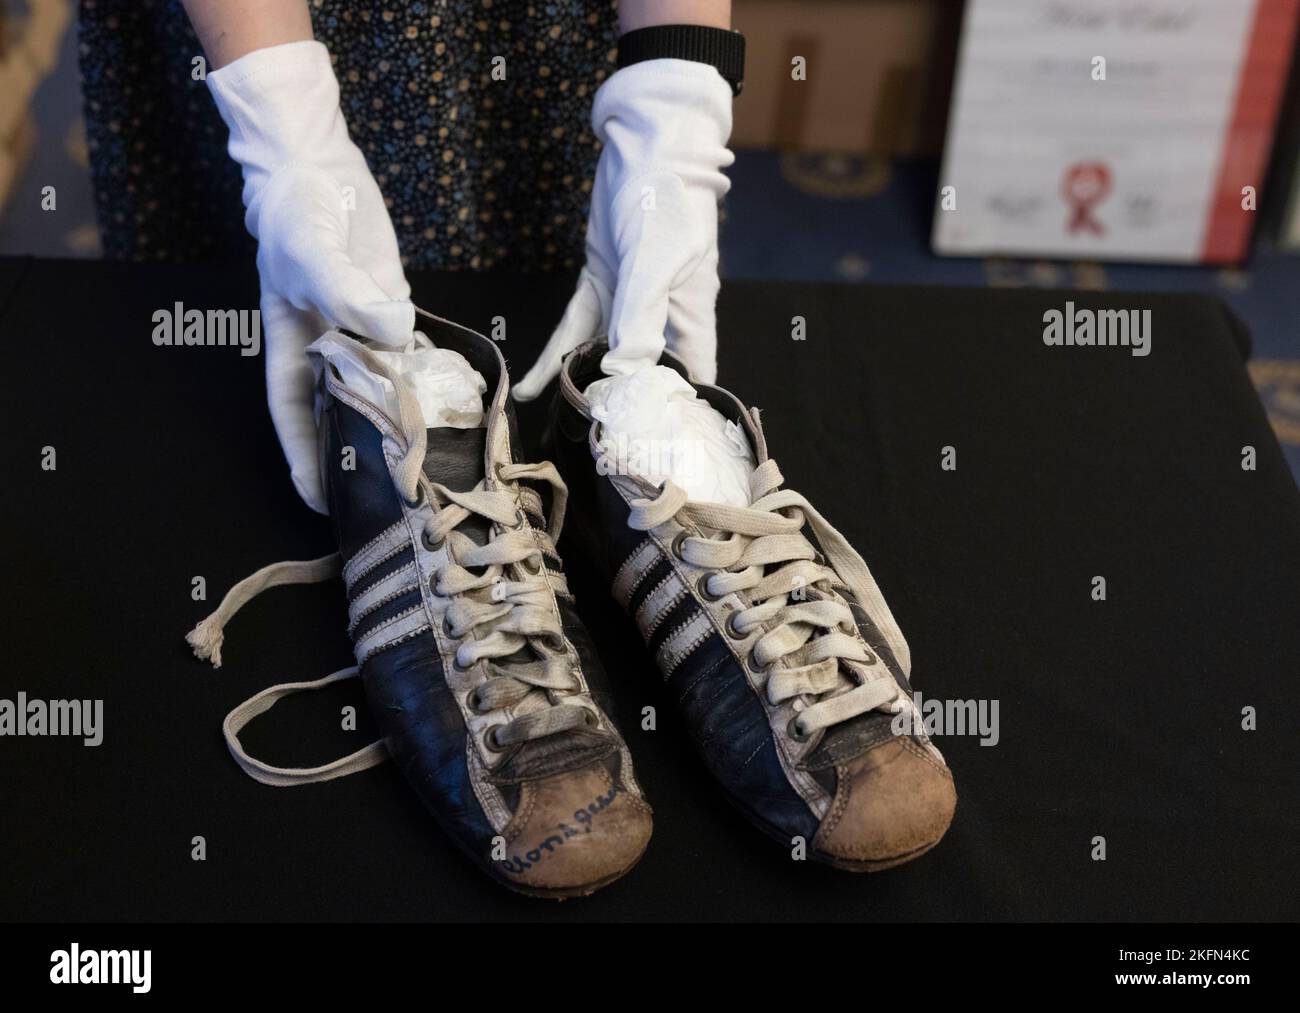 Adidas originals Banque de photographies et d'images à haute résolution -  Alamy